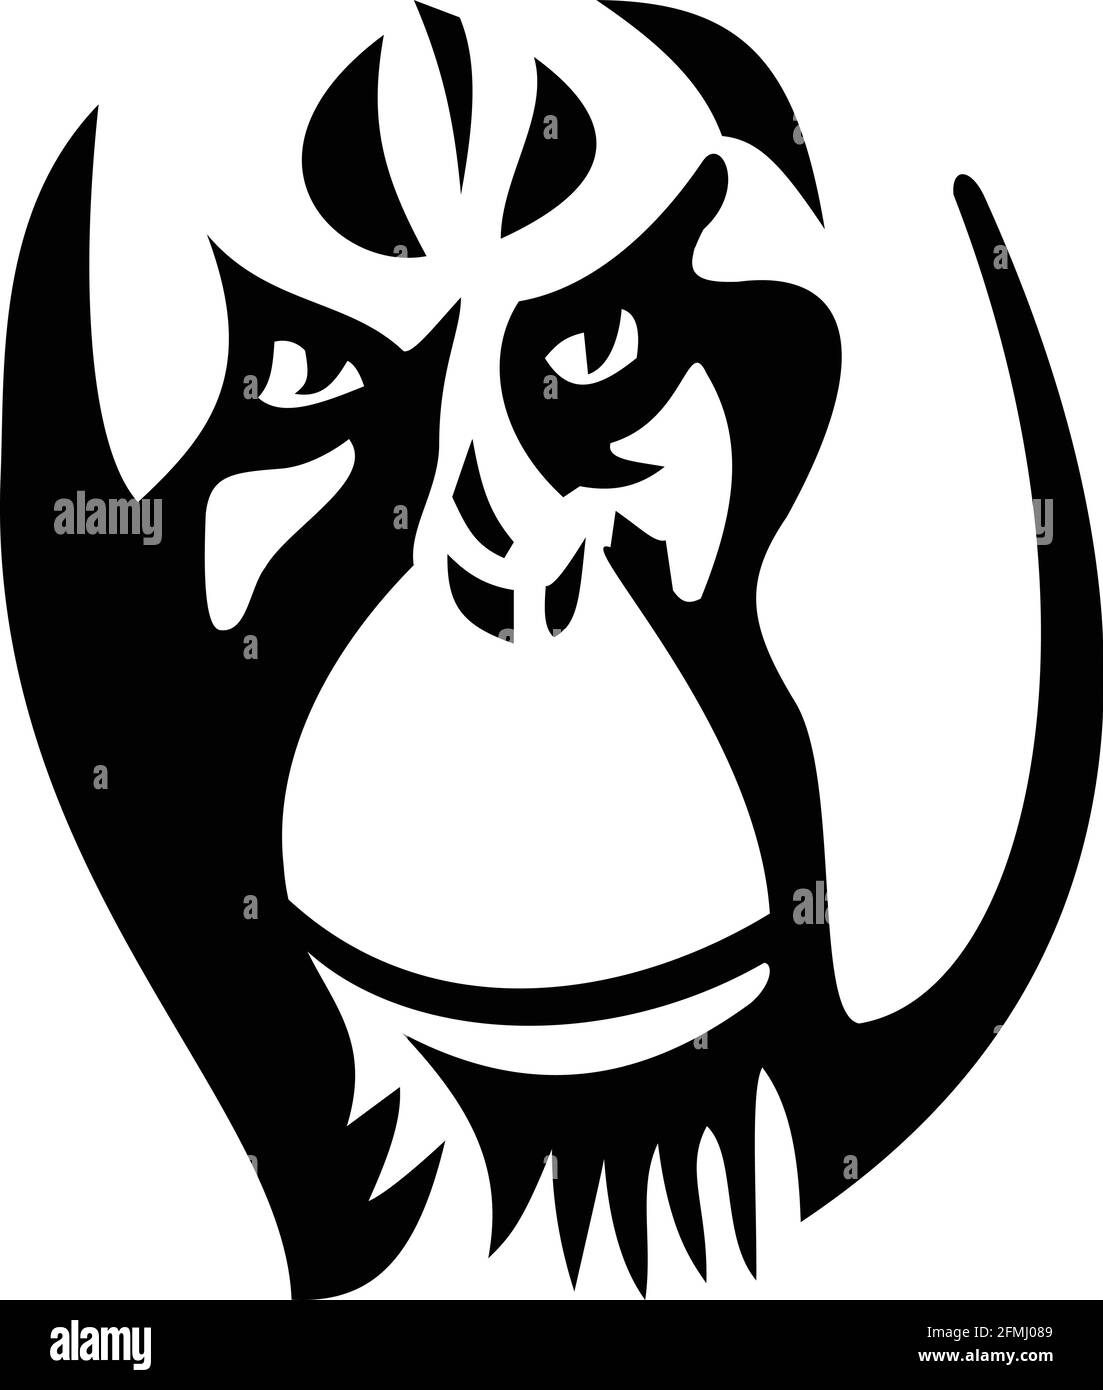 Maskottchen Abbildung des Kopfes eines wütenden erwachsenen männlichen Orang-Utan, großer Affe aus den Regenwäldern Indonesiens und Malaysias mit markanten Wangenpolster oder Stock Vektor